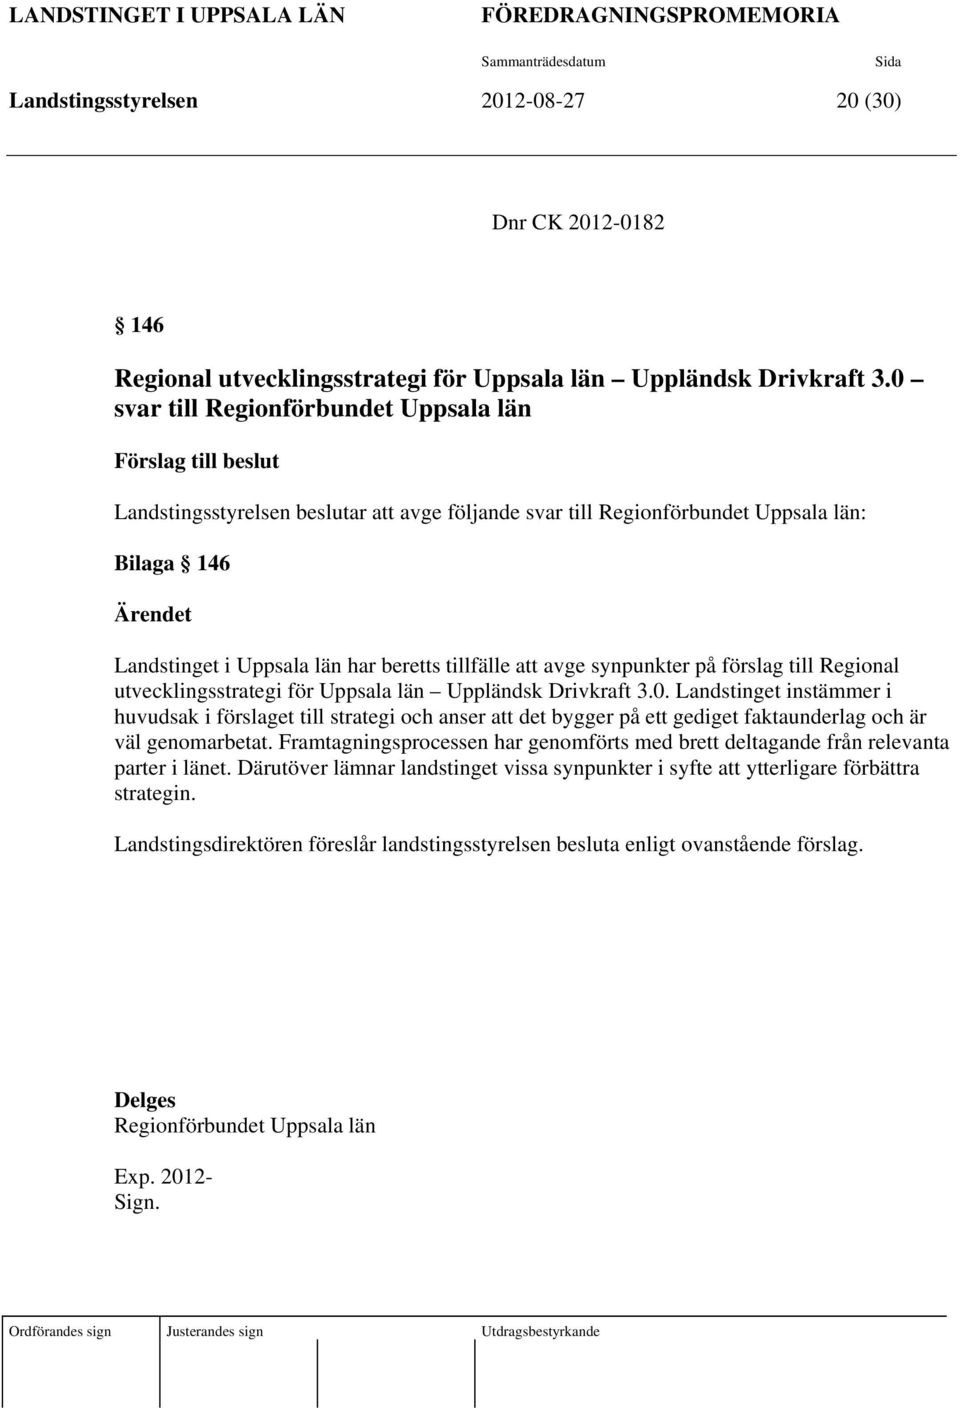 beretts tillfälle att avge synpunkter på förslag till Regional utvecklingsstrategi för Uppsala län Uppländsk Drivkraft 3.0.